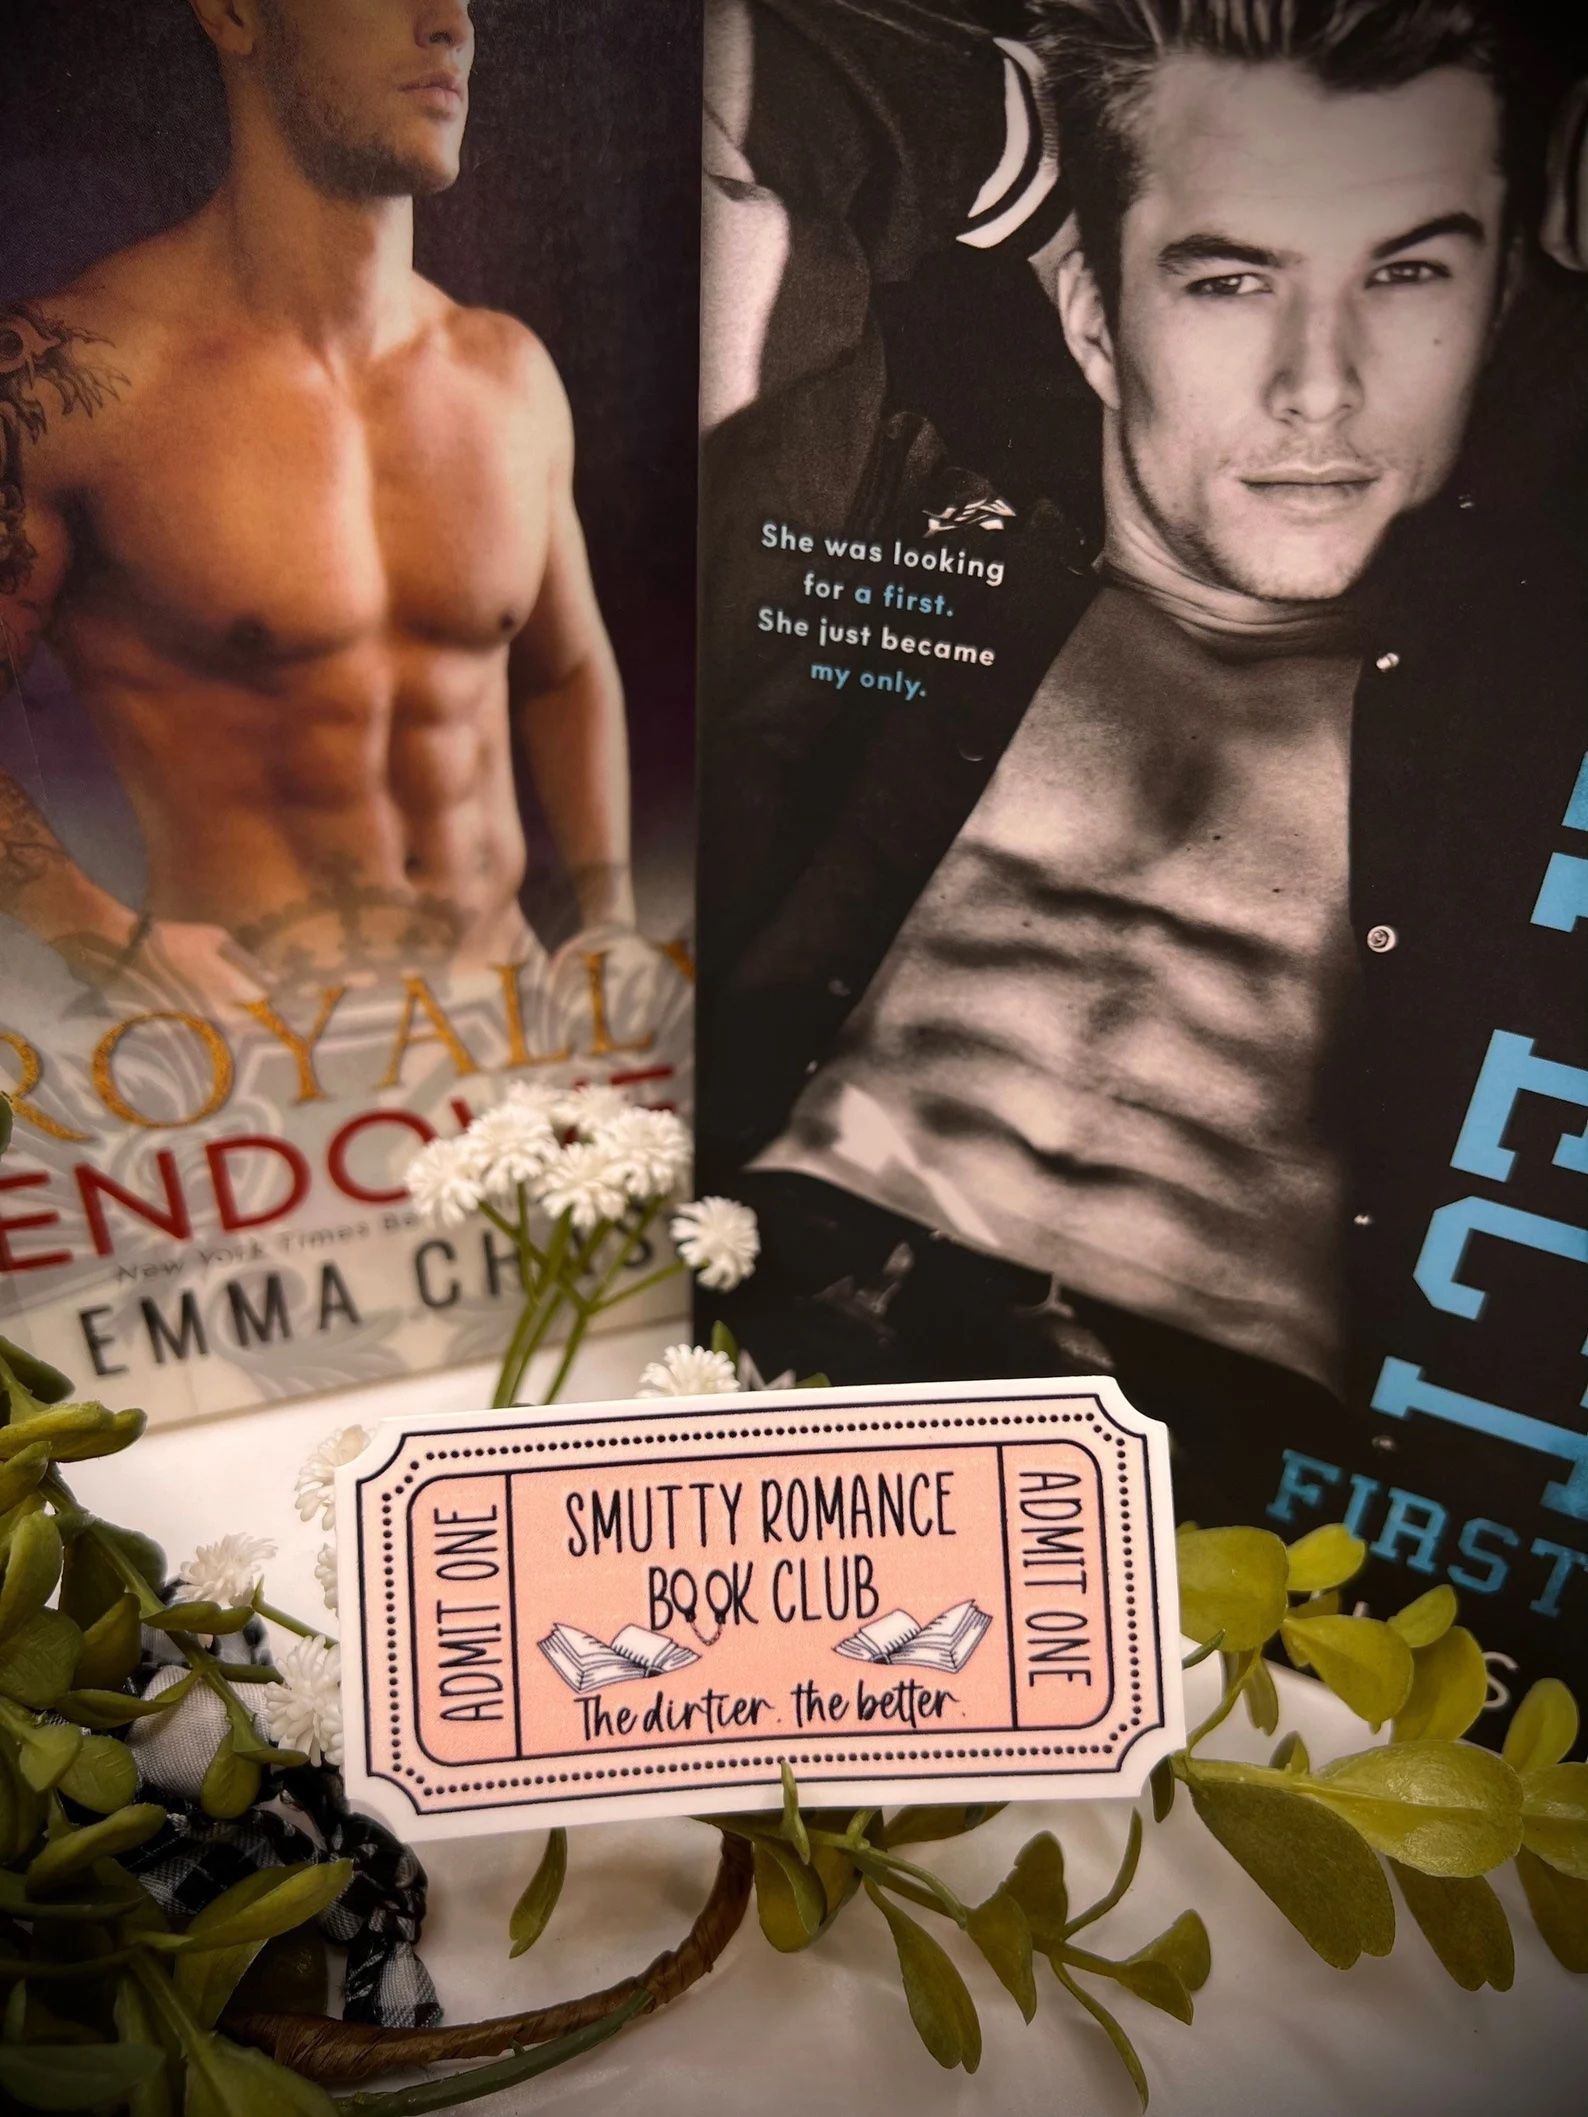 smutty romance book club ticket sticker